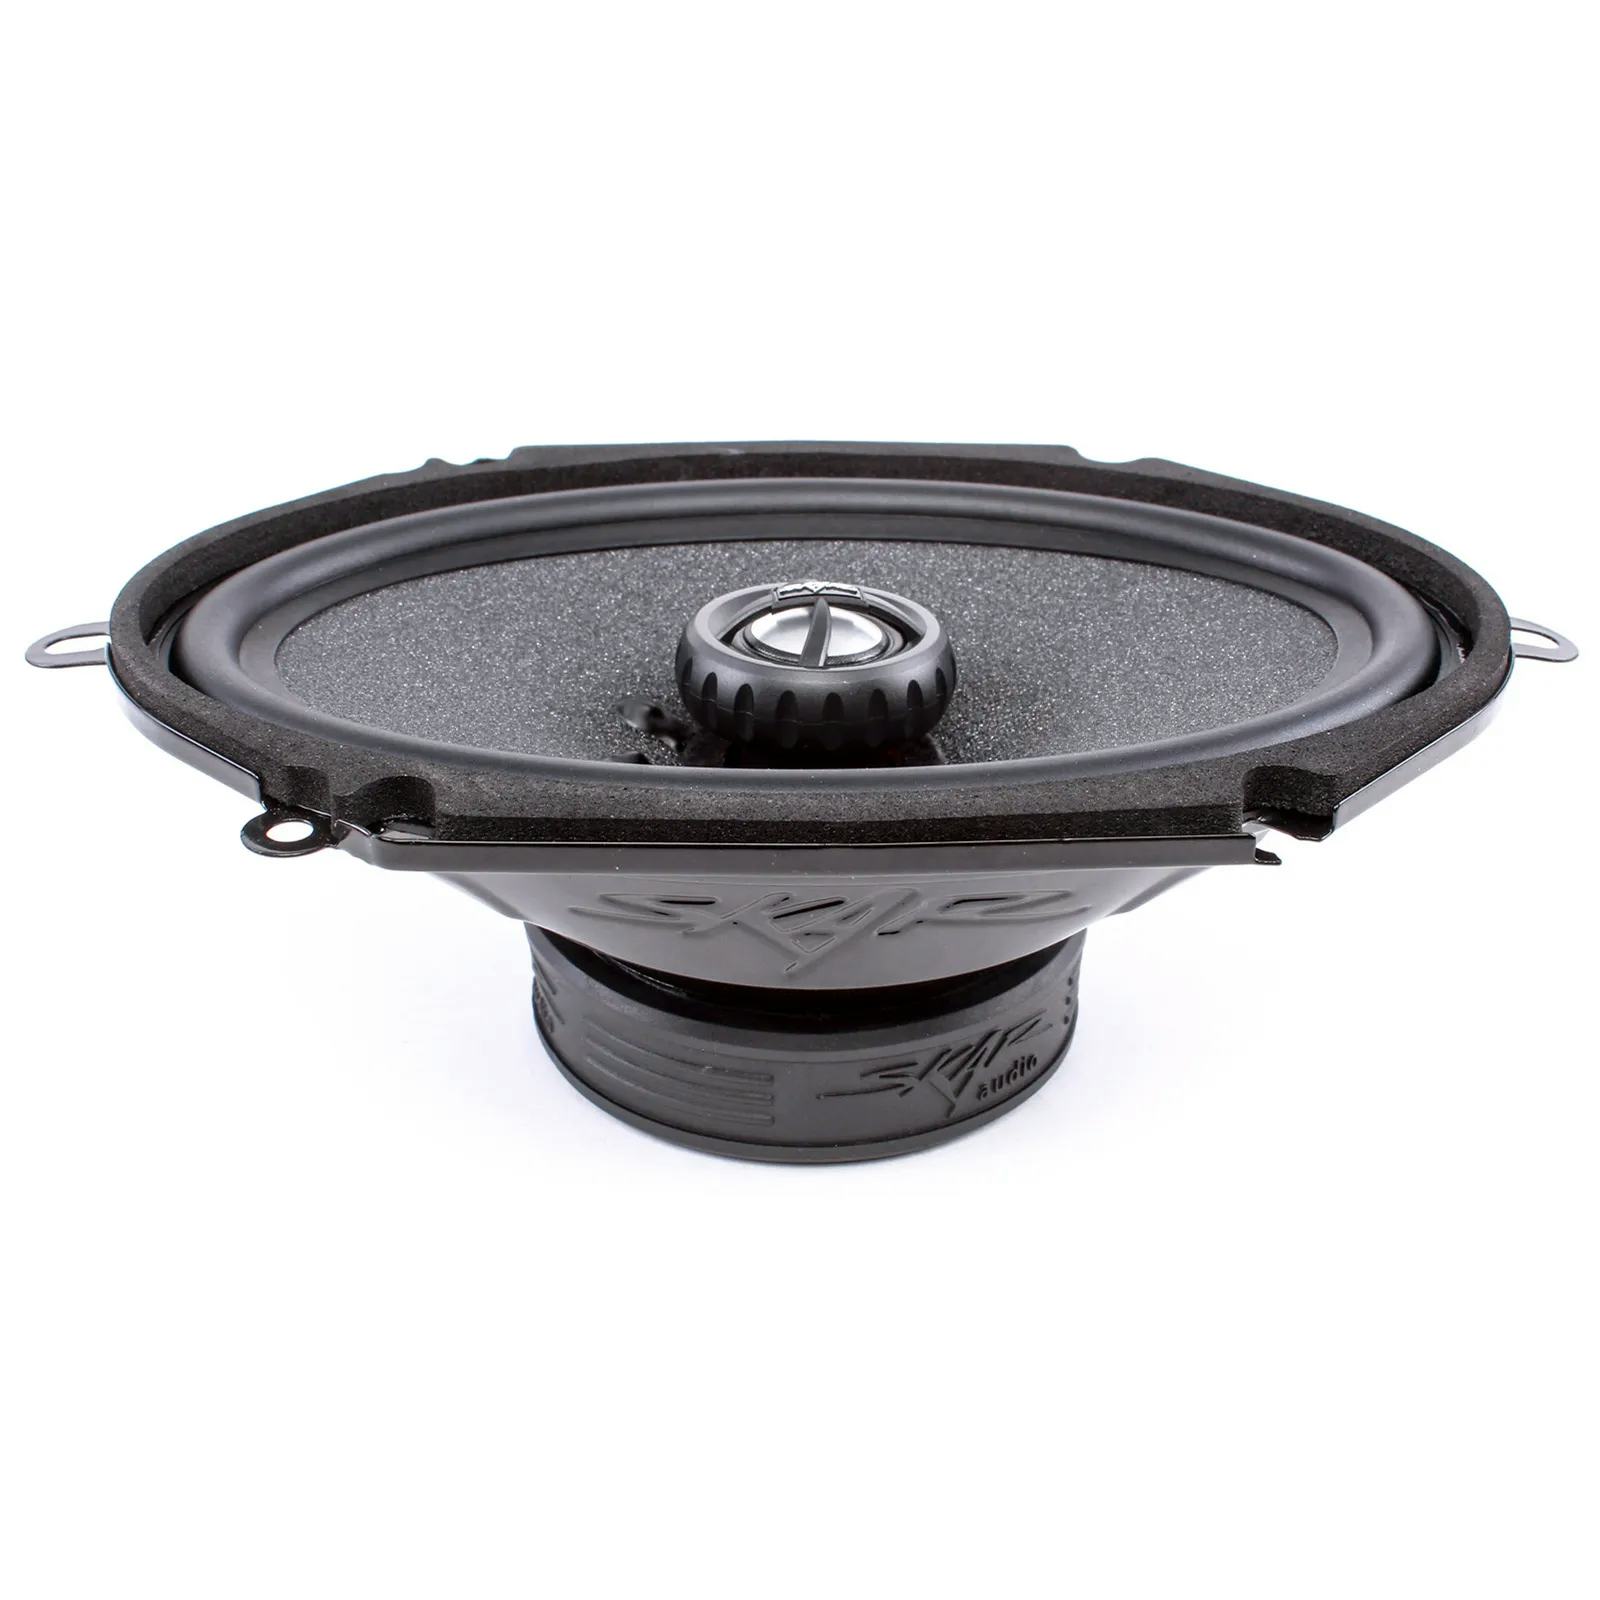 RPX68 | 6" x 8" 210 Watt Coaxial Car Speakers - Pair #3